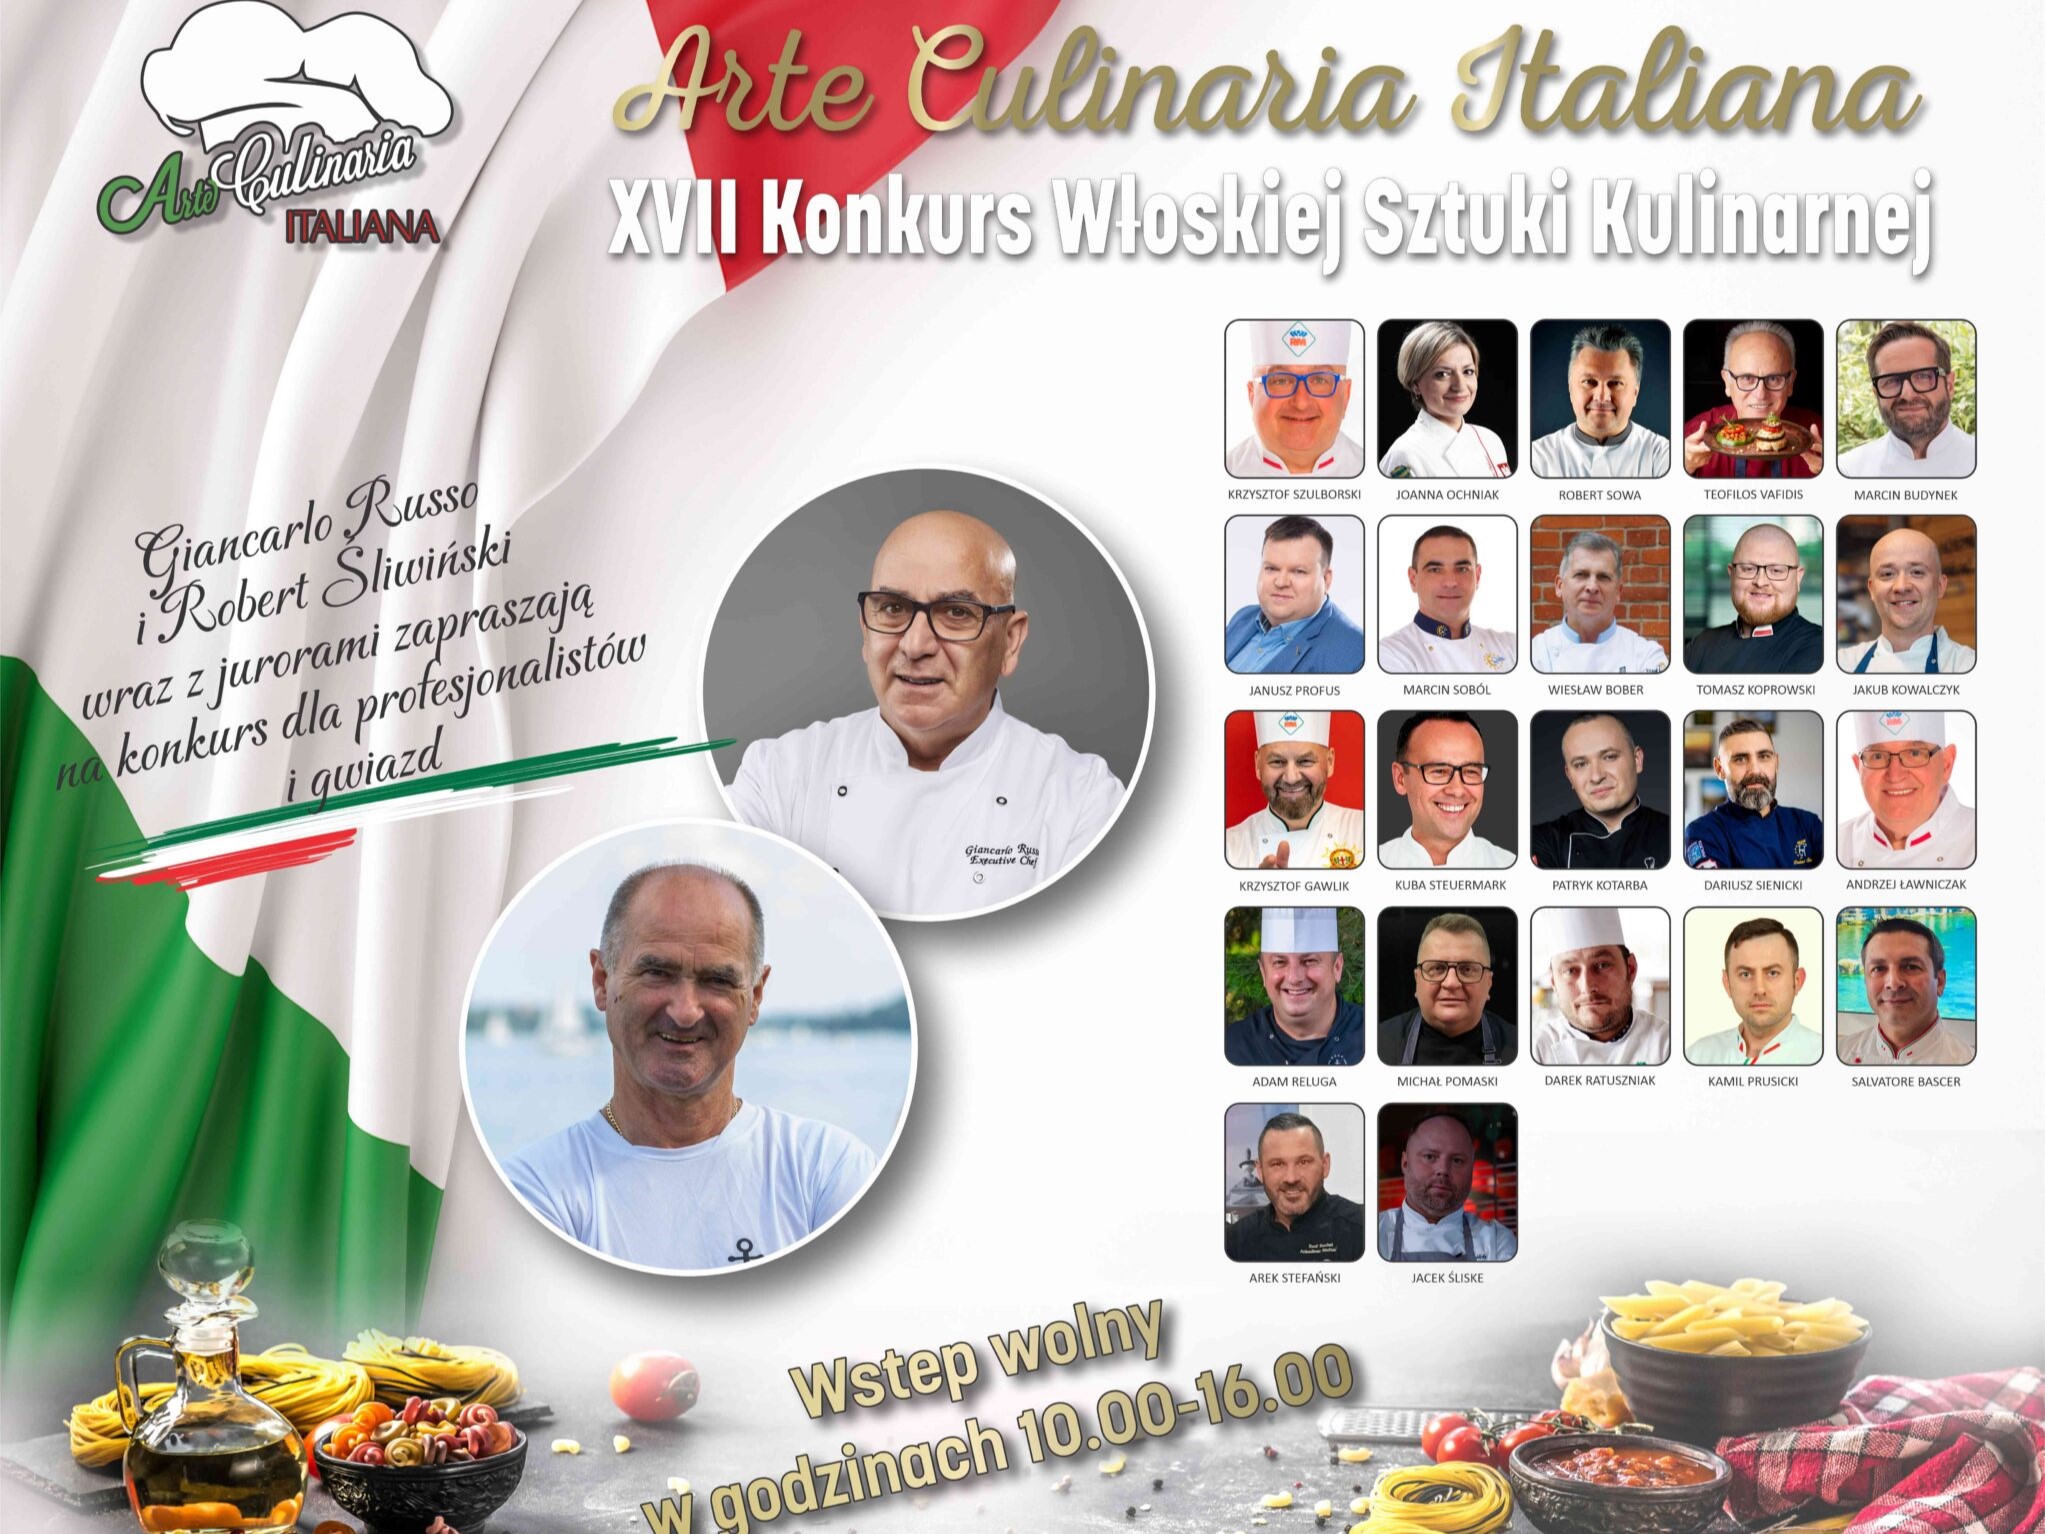 Arte Culinaria Italiana już 16 marca